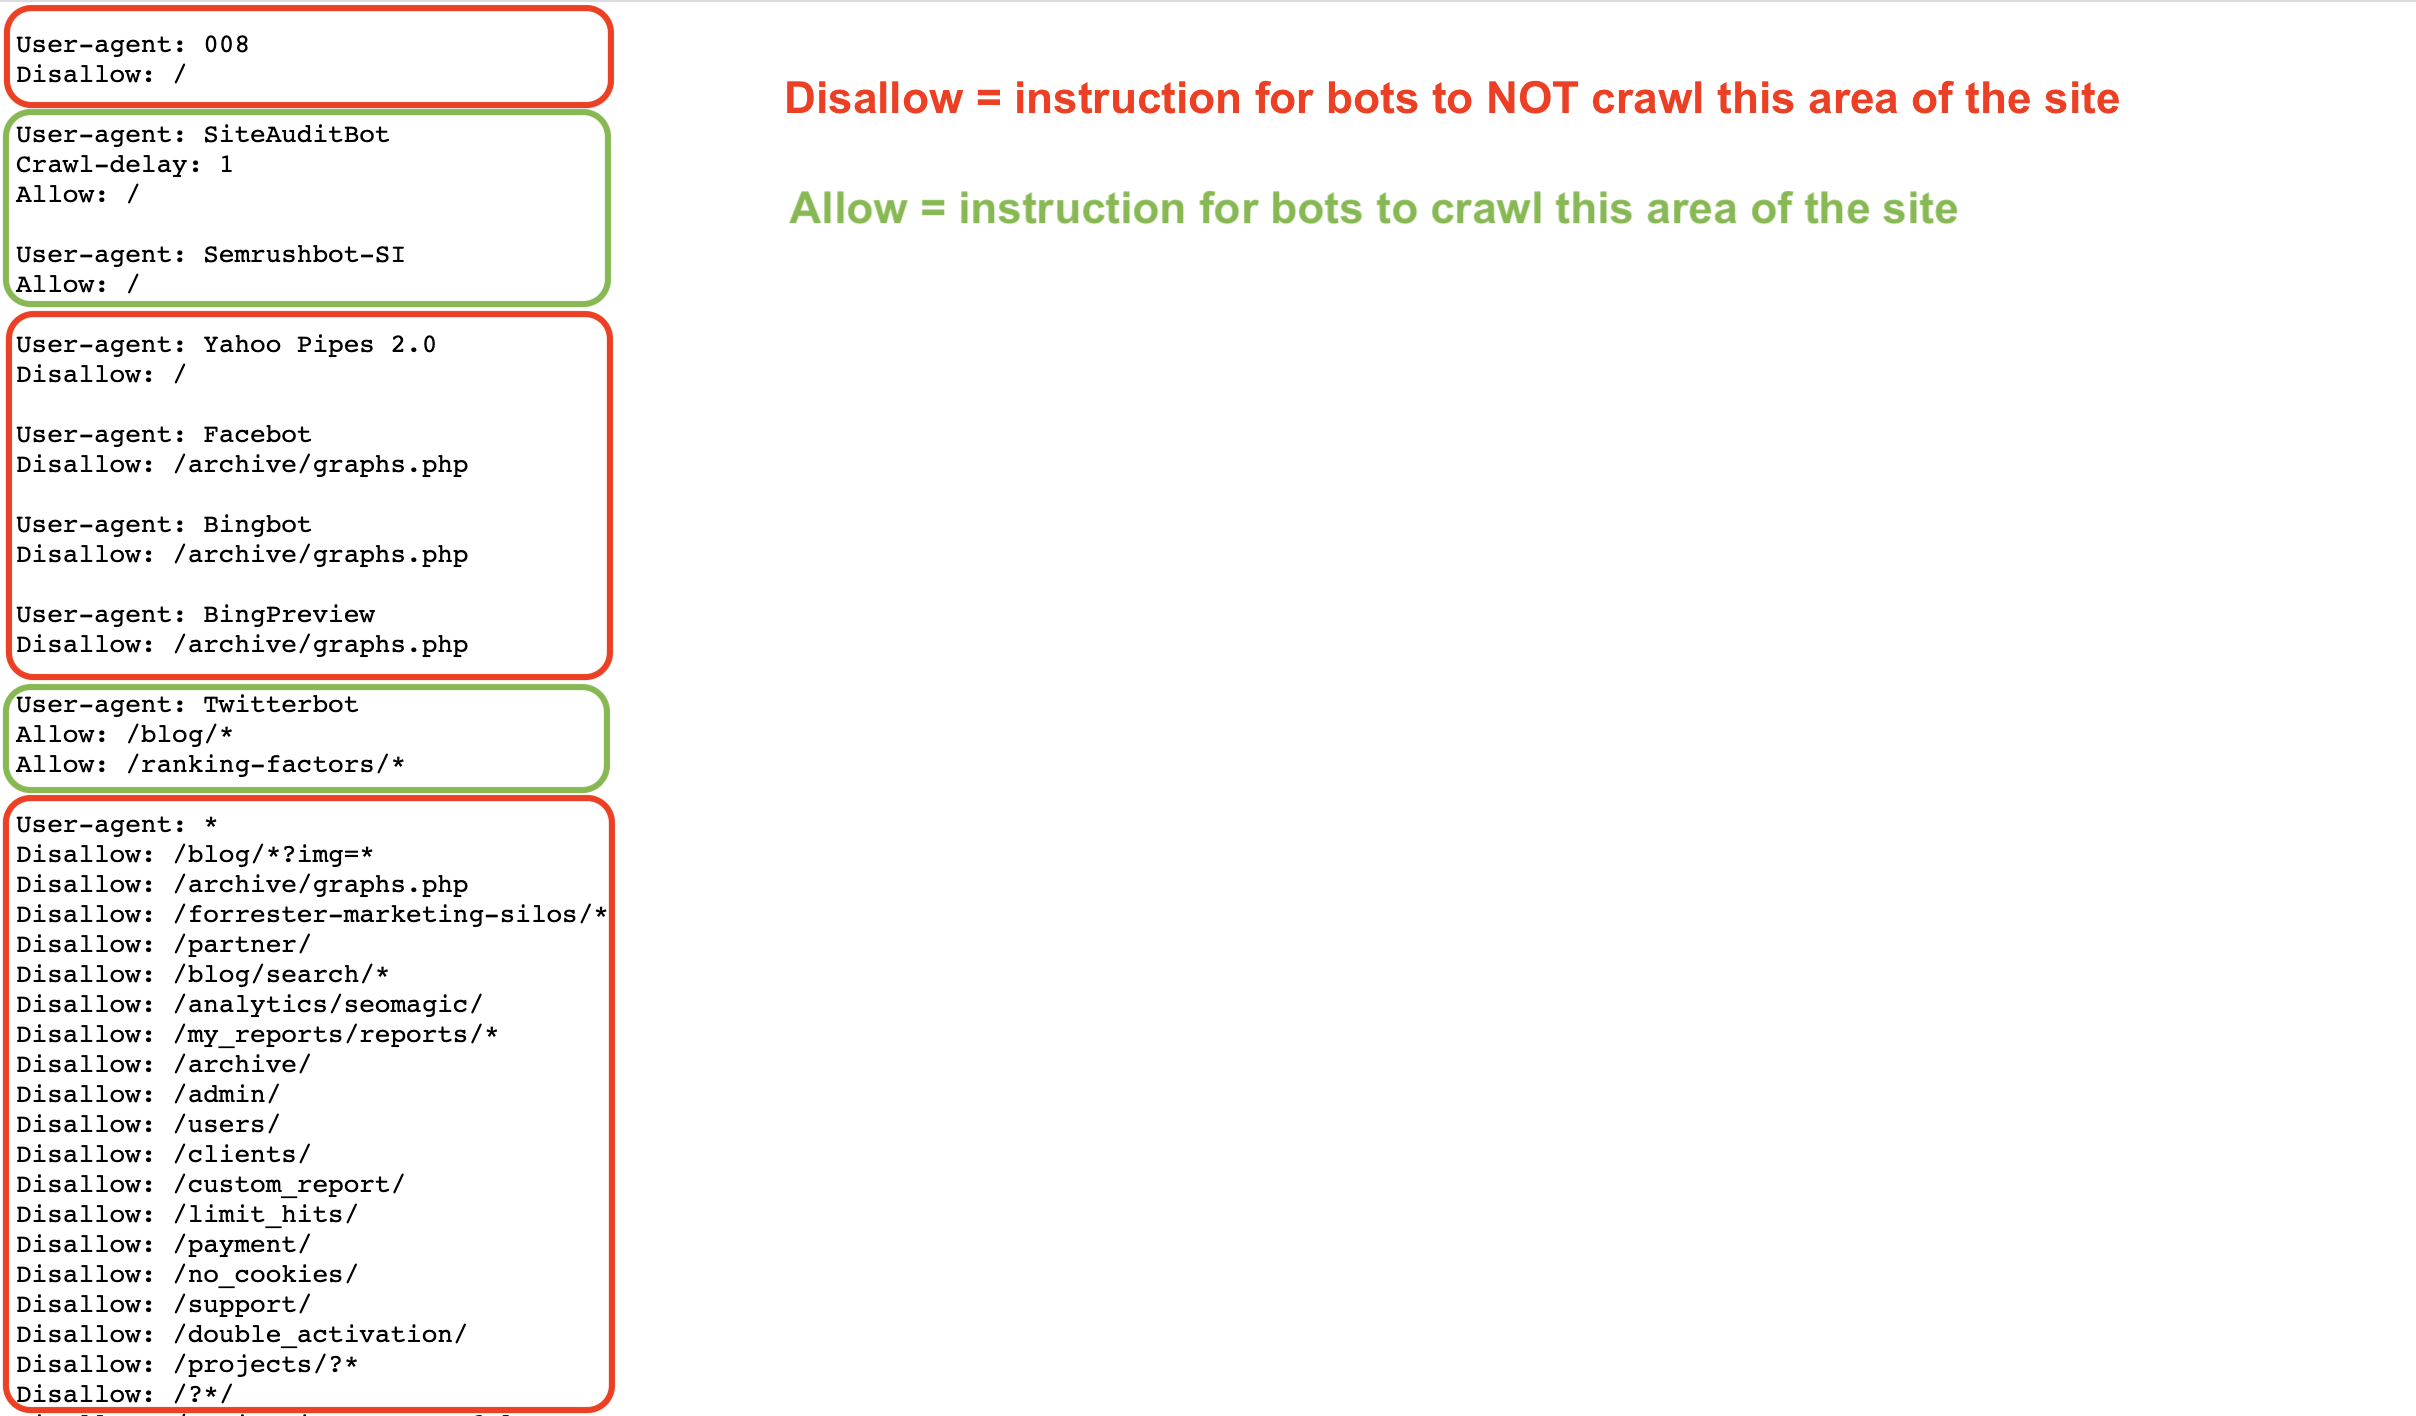 Elenco delle direttive allow e disallow in un file robots.txt di esempio. Le direttive disallow sono evidenziate in rosso, quelle allow in verde chiaro. Ci sono anche istruzioni aggiuntive sul lato destro della schermata: Disallow = istruzione ai bot di NON effettuare il crawling di quest'area del sito (in rosso), Allow = istruzione ai bot di effettuare il crawling di quest'area del sito (in verde).